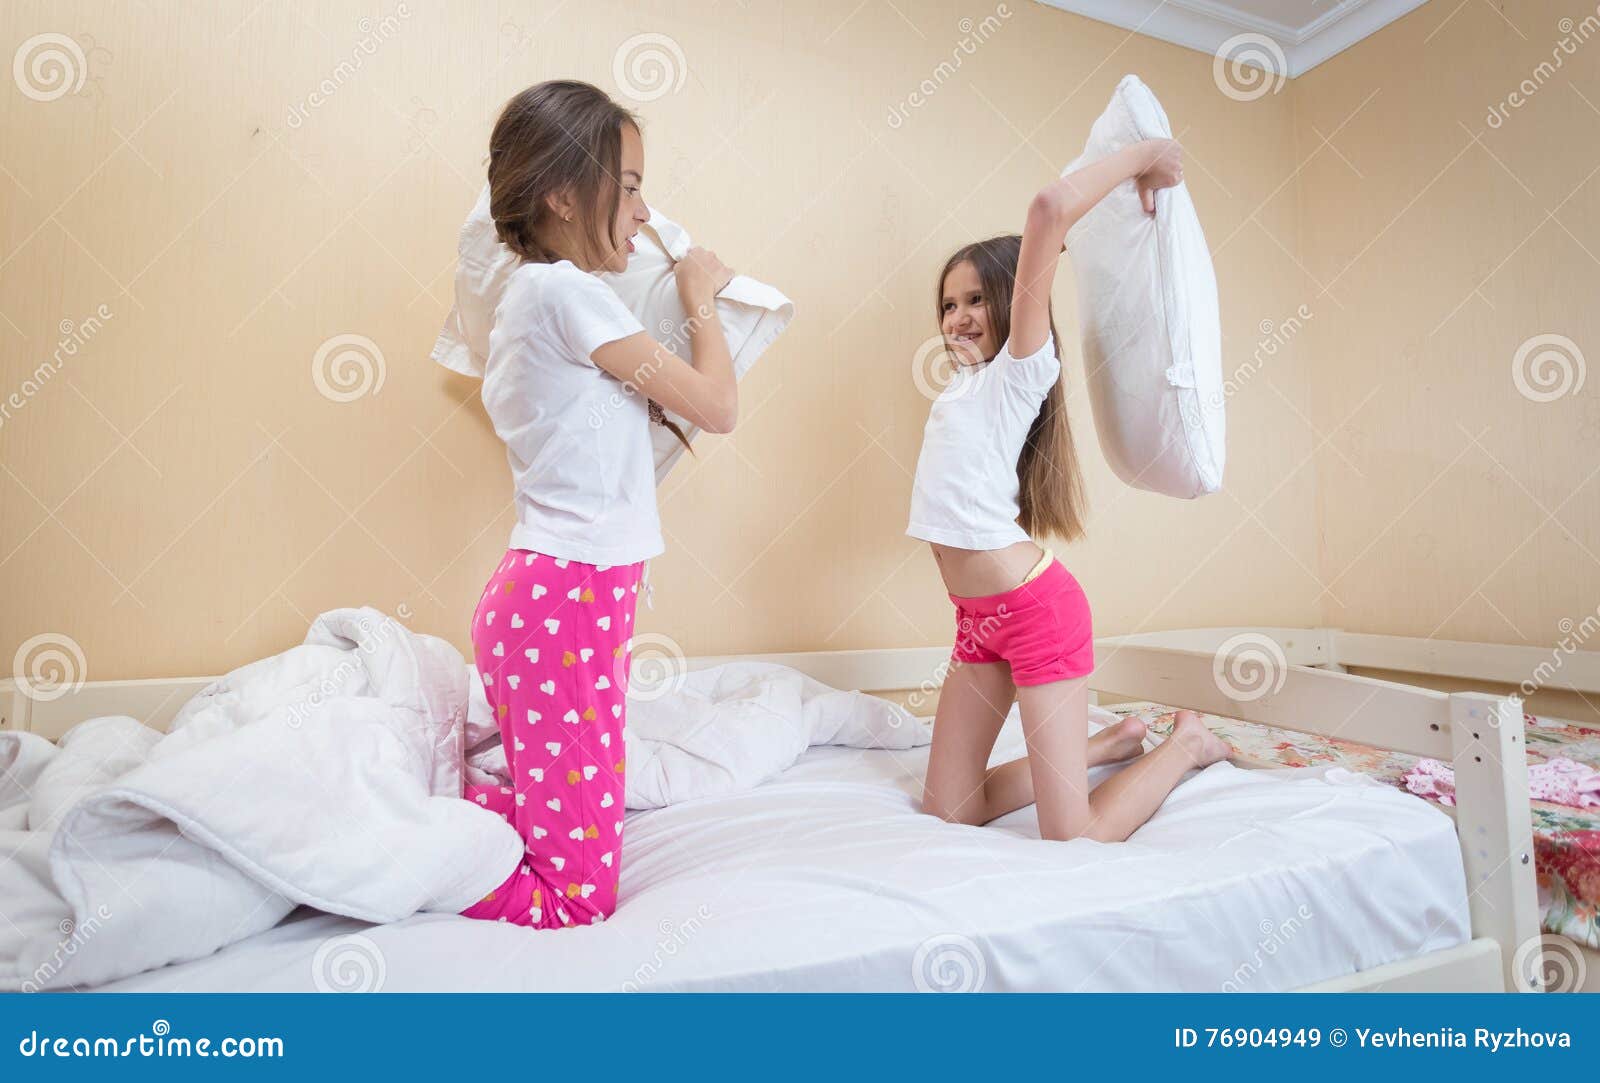 Сестры в пижамах кровать. Пижама для подростка девочки. Сестра в пижаме. Кровать для девочки 12 лет. Пришел к сестре в кровать